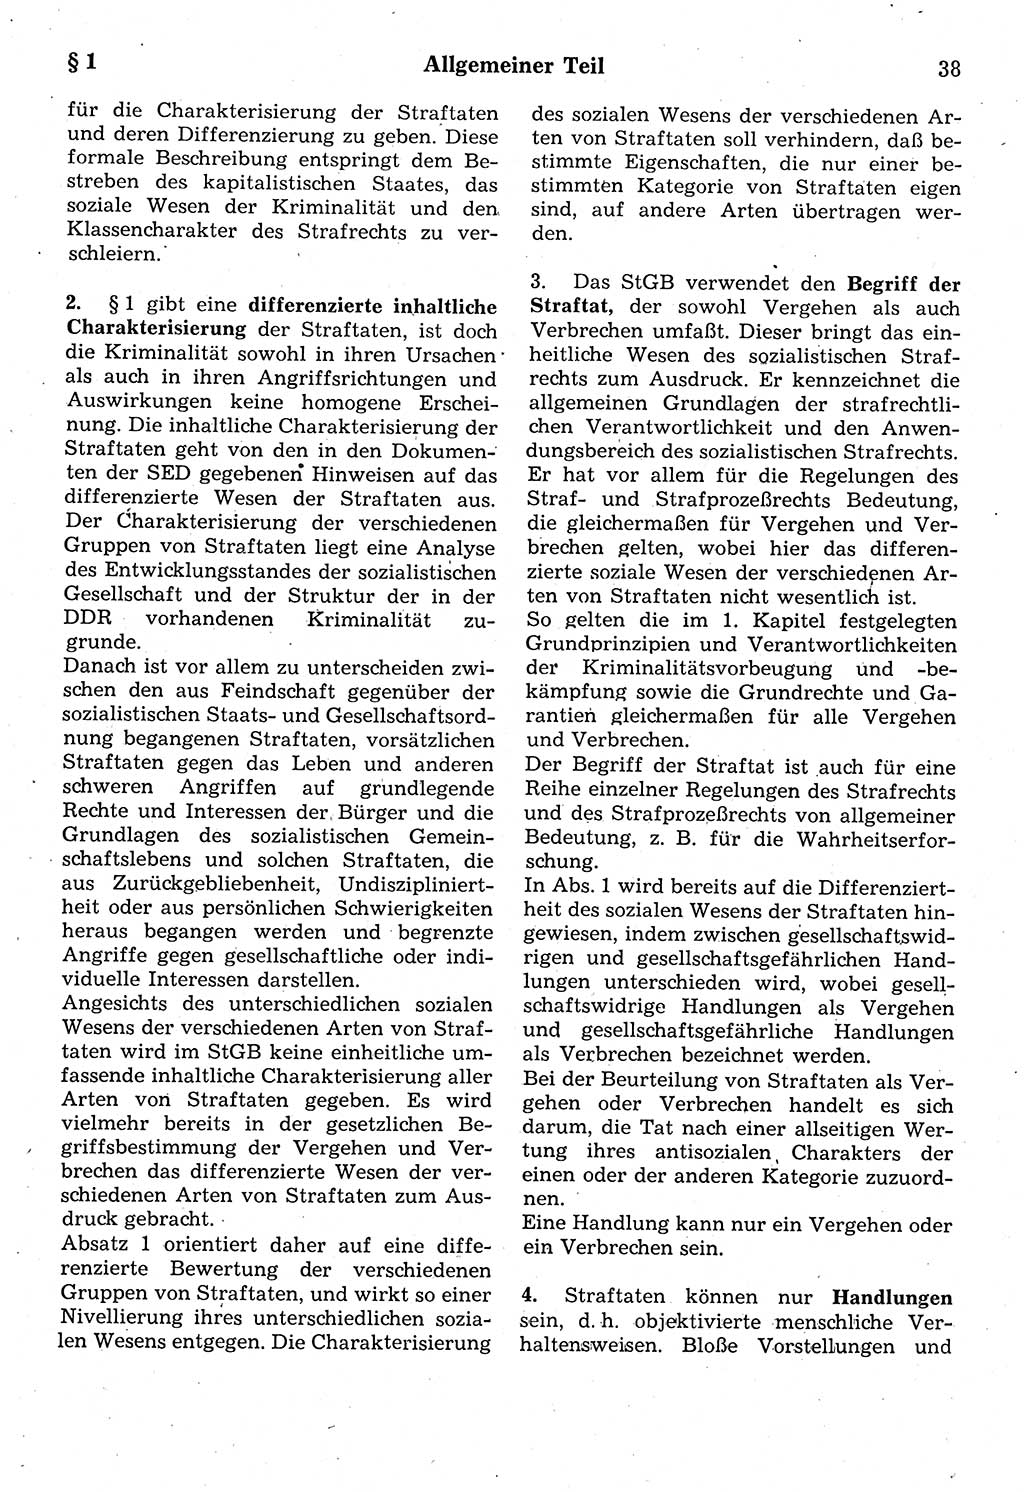 Strafrecht der Deutschen Demokratischen Republik (DDR), Kommentar zum Strafgesetzbuch (StGB) 1987, Seite 38 (Strafr. DDR Komm. StGB 1987, S. 38)